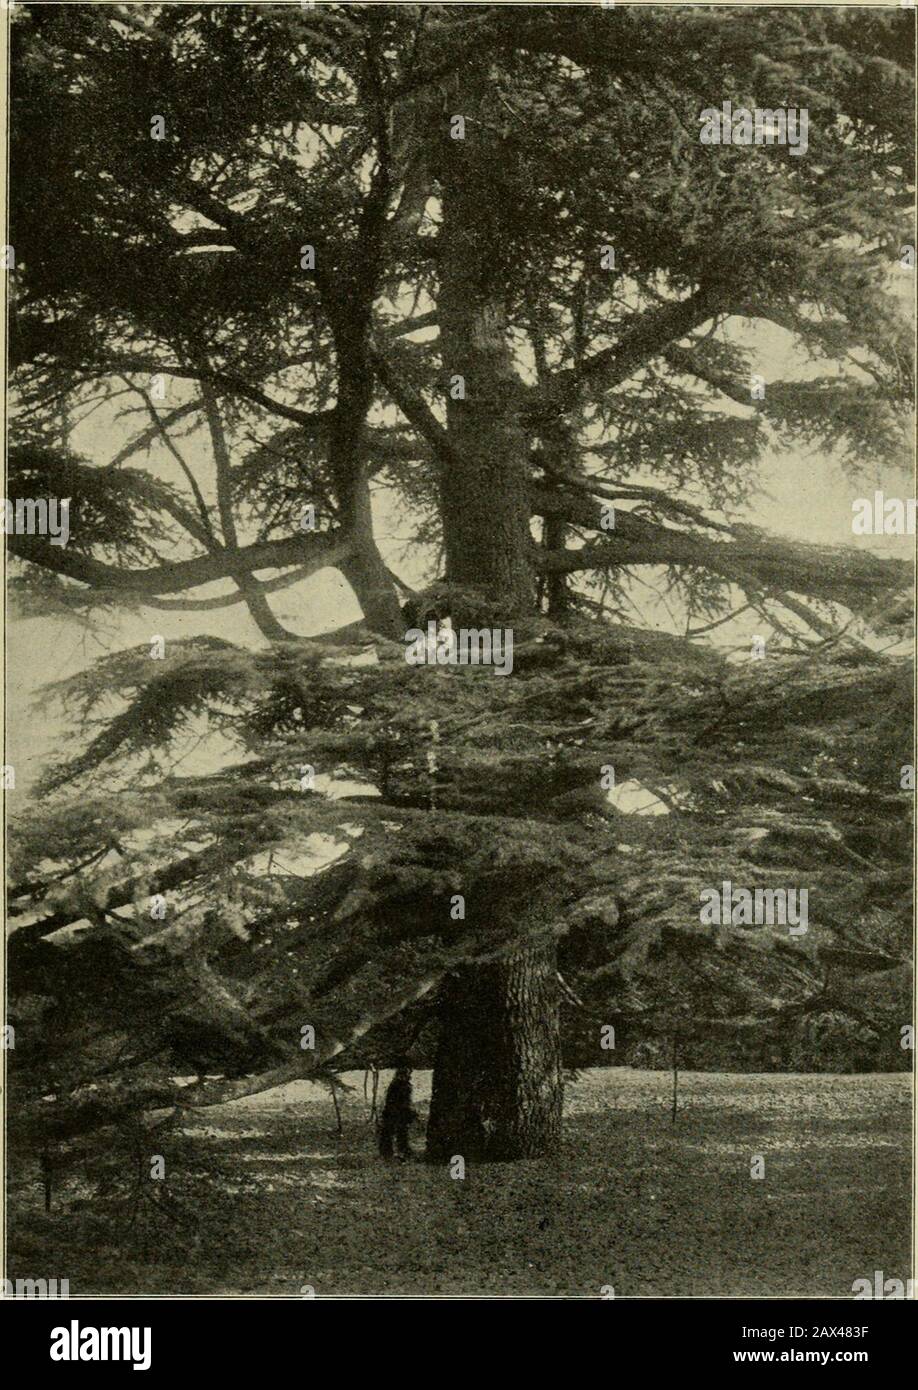 Mitteilungen der Deutschen Dendrologischen Gesellschaft . ie Bäume stehen, wie sie seinerzeit gepflanzt wurden,2,50 m auseinander. Die stärksten Exemplare der P. Jeffreyi besitzen eine Höhevon 13—14 m und einen Umfang in Brusthöhe von 88 cm bis i m, diejenigender P. ponderosa eine Höhe von 10—11 m und einen Umfang von i—1,13 m. Abwärtssteigend kamen wir durch einen Bestand der Nordmanns - Tanne(Abies Nordmanniana) des Kaukasus und der stufigen, etwas starren SpanischenTanne (Abies Pinsapo), die recht gut gedeihen. In der Tiefe des Tälchens stehenkränkelnde Cryptomeria japonica an einem magern Stock Photo